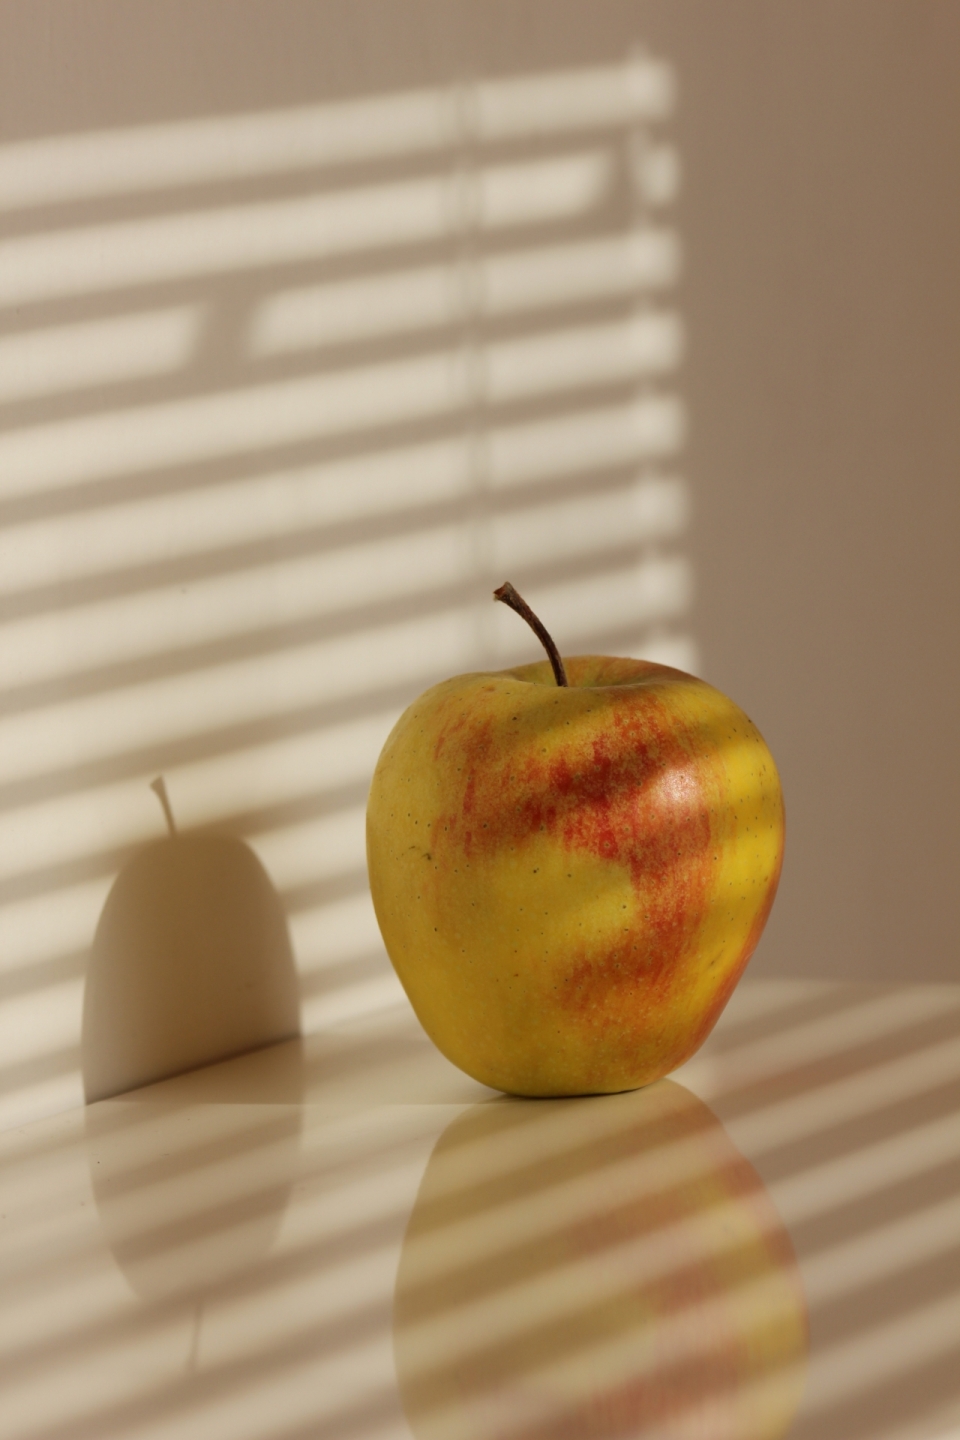 阳光透过百叶窗照在桌上的的苹果